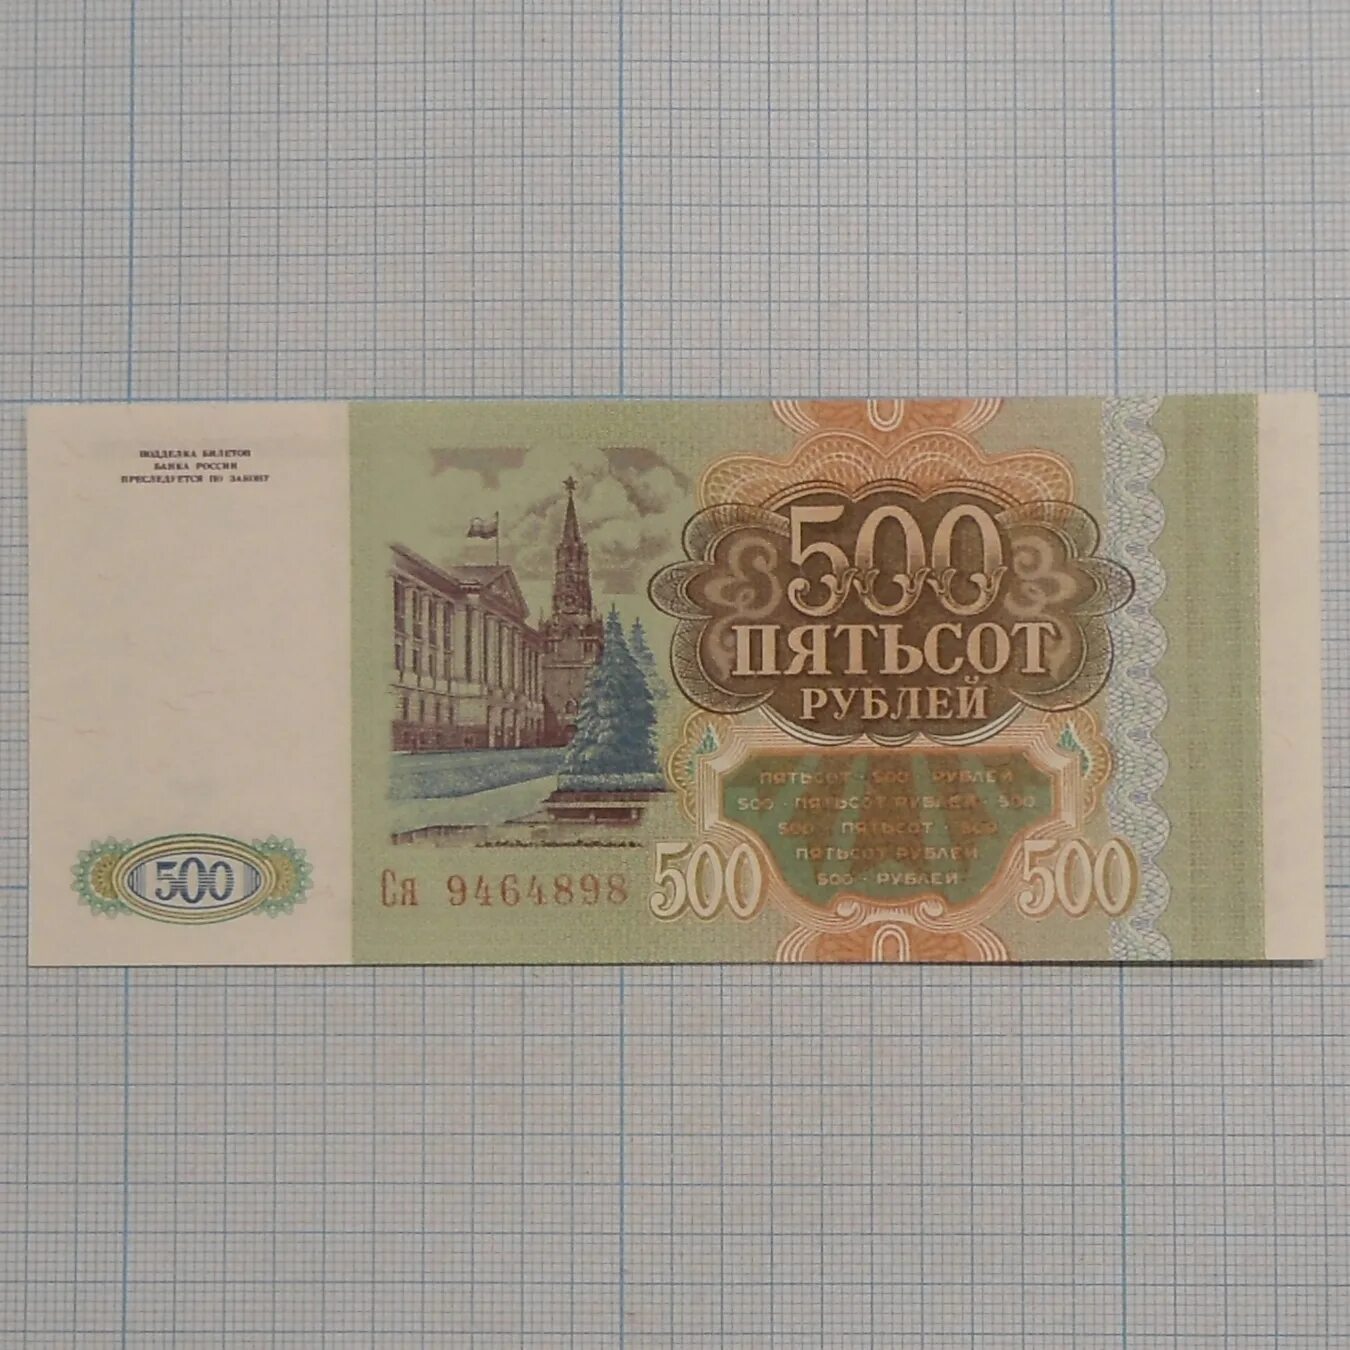 15 от 500 рублей. 500 Рублей 1993. Купюра 500 рублей 1993. 500 Рублей. 500 Рублей 1993 бумажные.